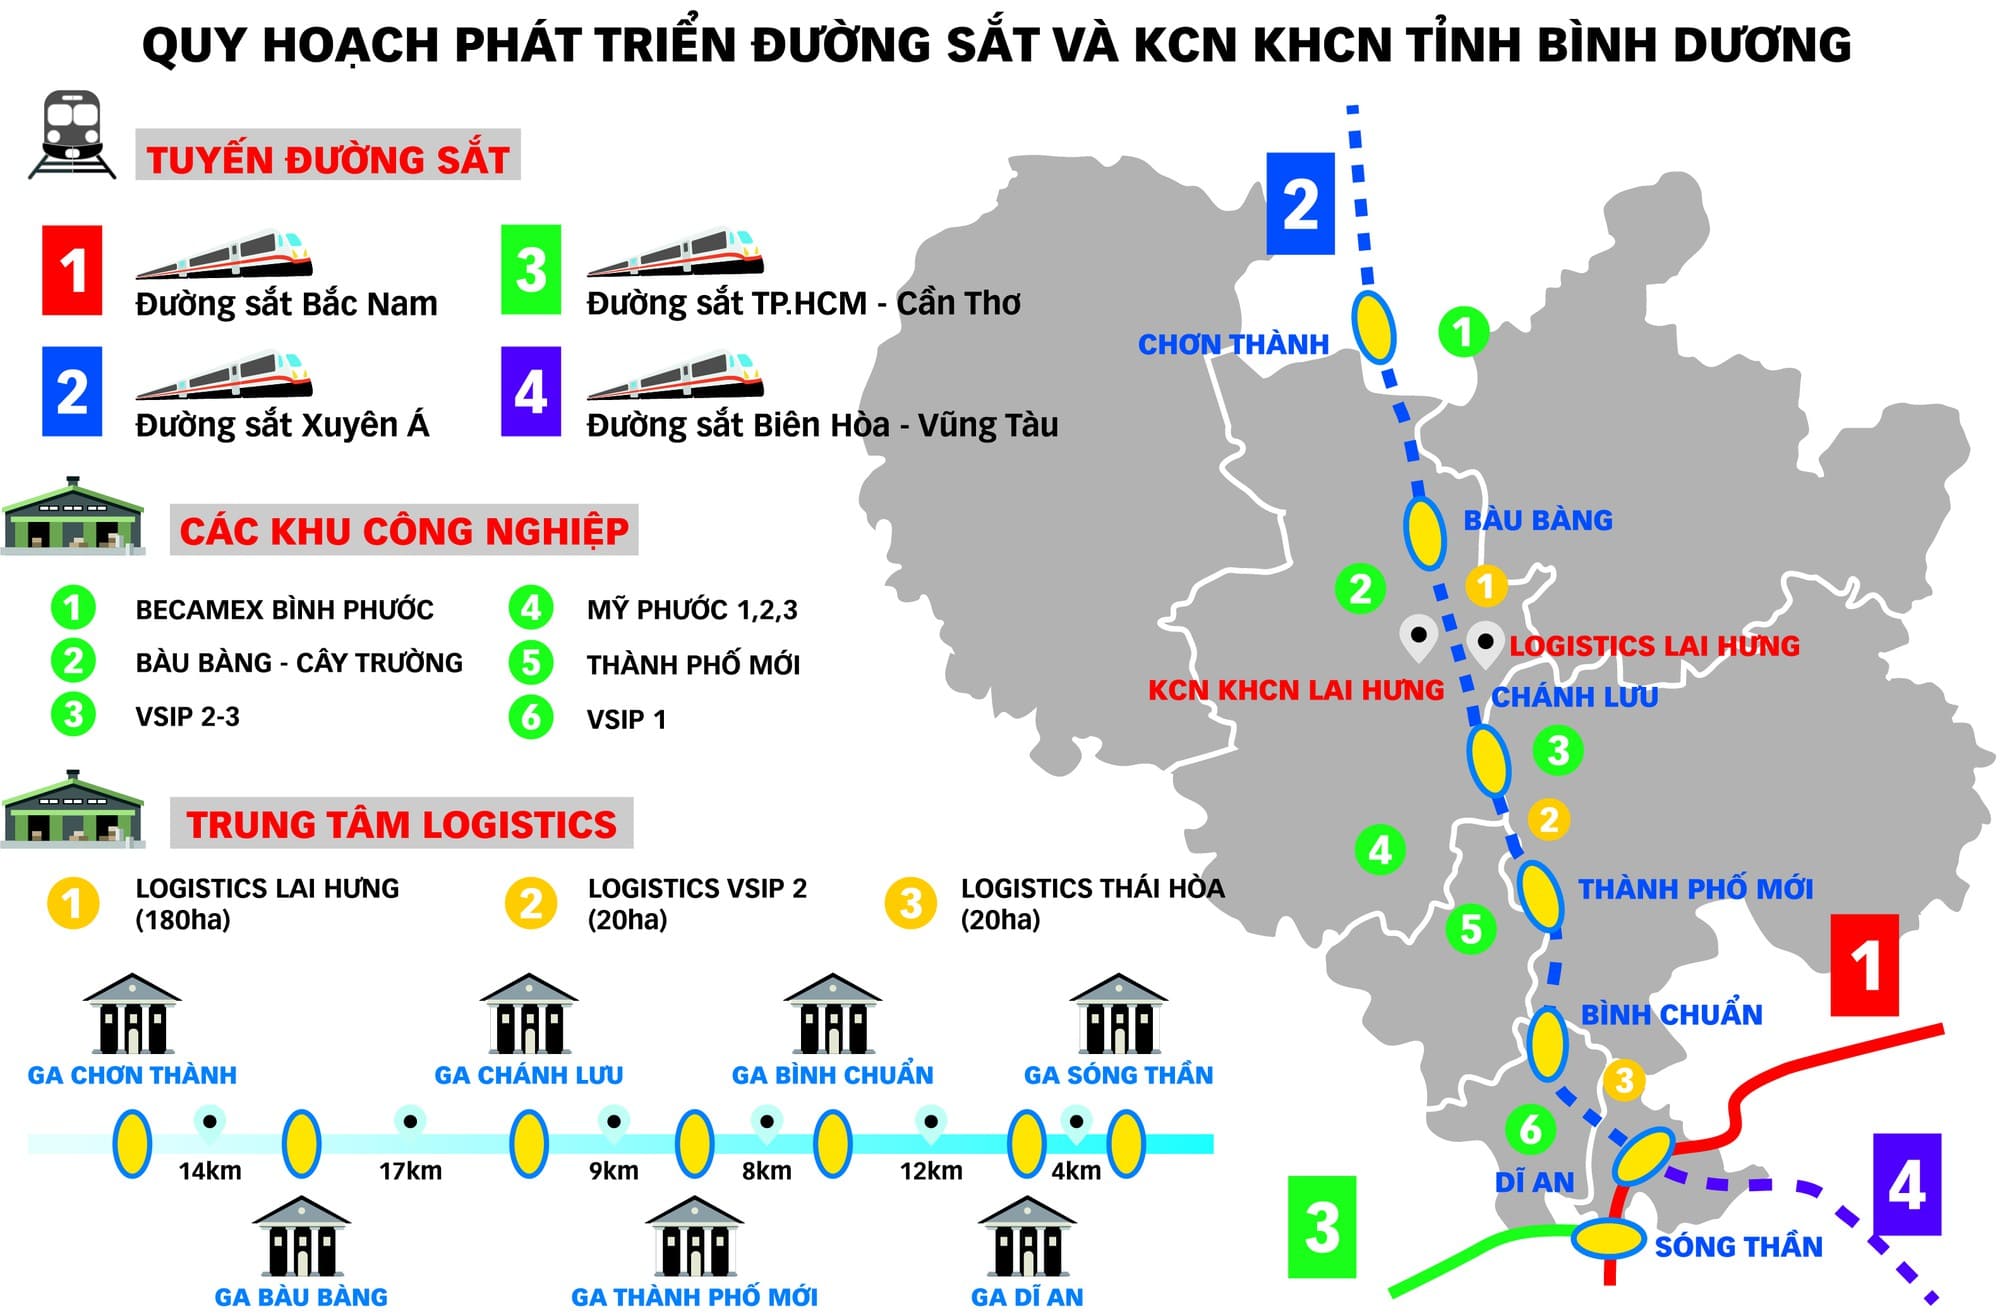 Quy hoạch các tuyến đường sắt và Khu công nghiệp KHCN tại Bình Dương